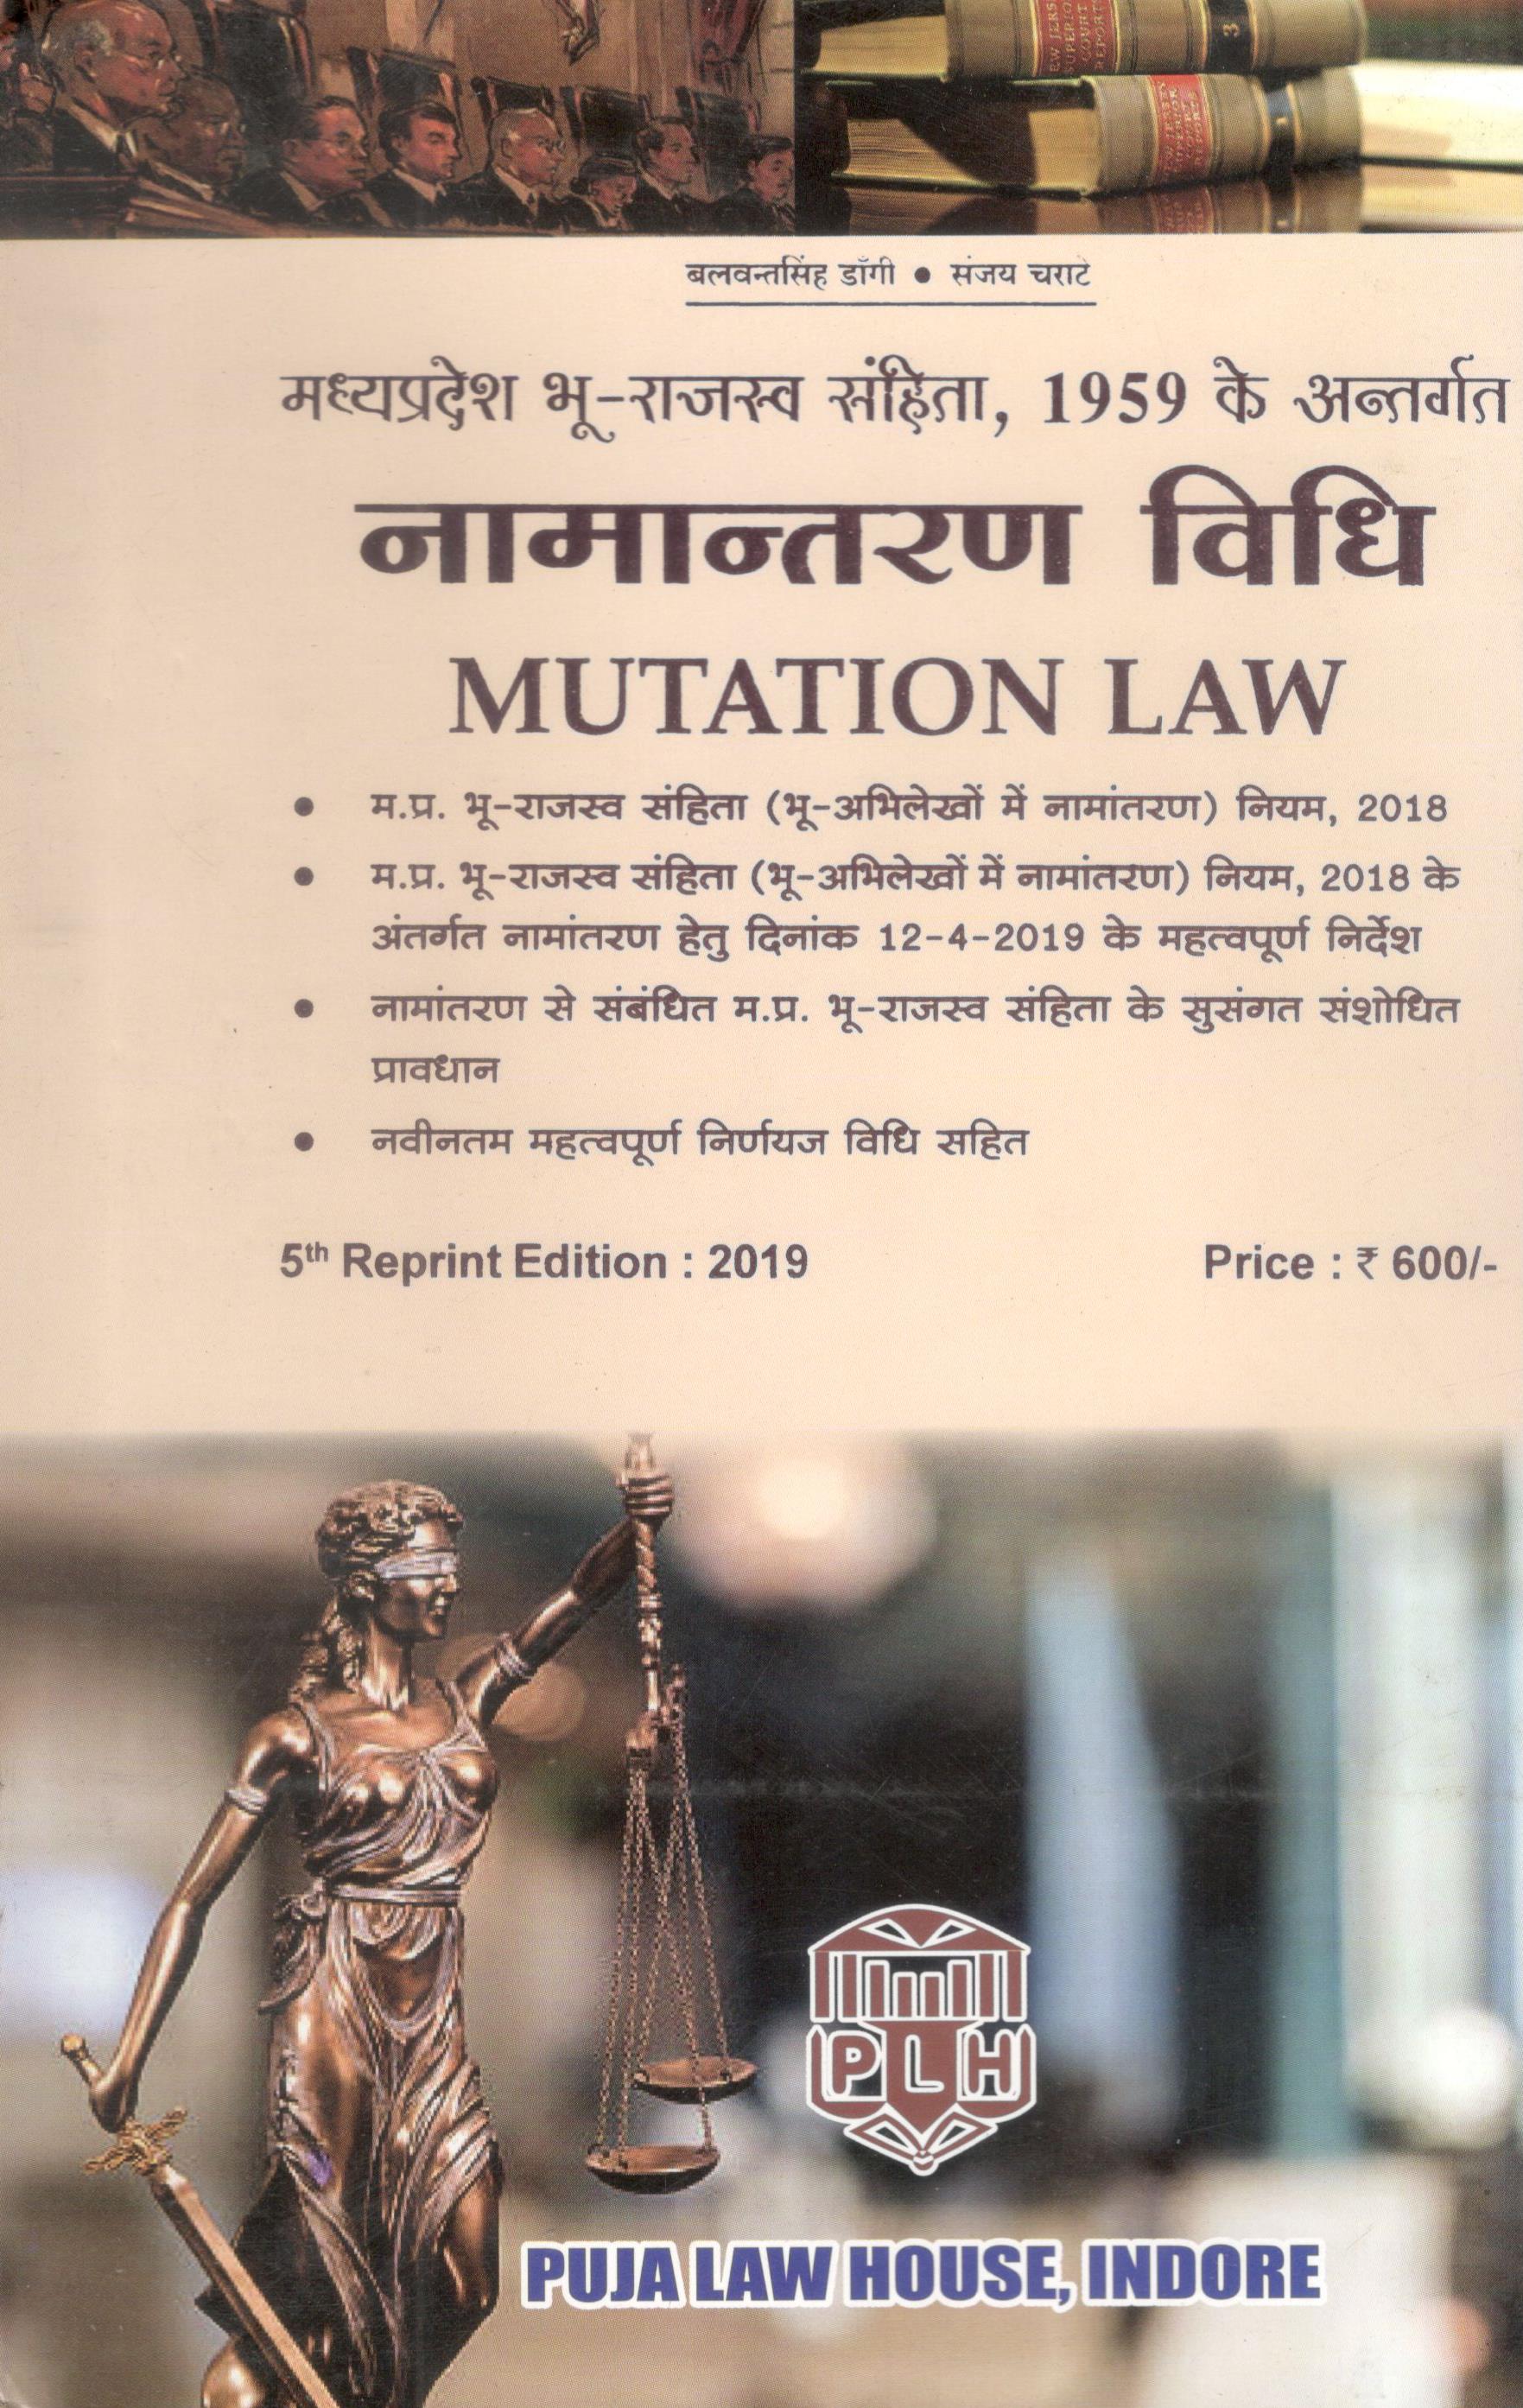 बलवंत सिंह डांगी, संजय चराटे - मध्य प्रदेश भू राजस्व सहिता, १९५९ के अंतर्गत नामांतरण विधि / MUTATION LAW